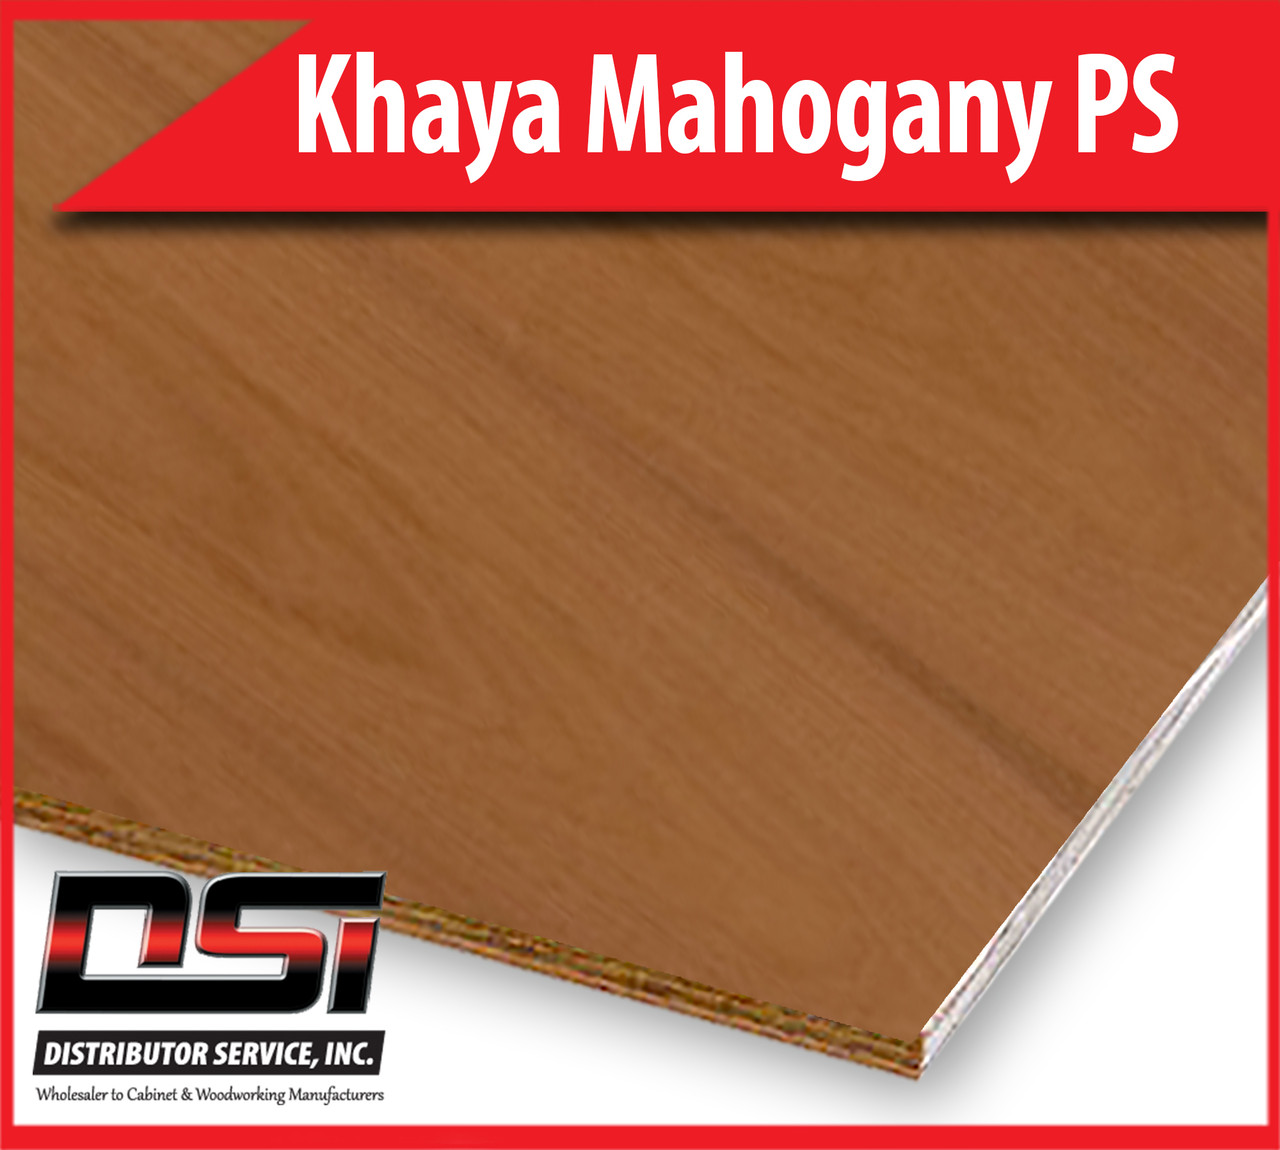 Khaya Mahogany Plywood Plain Sliced VC A-3 1/4" x 49"x96.5"